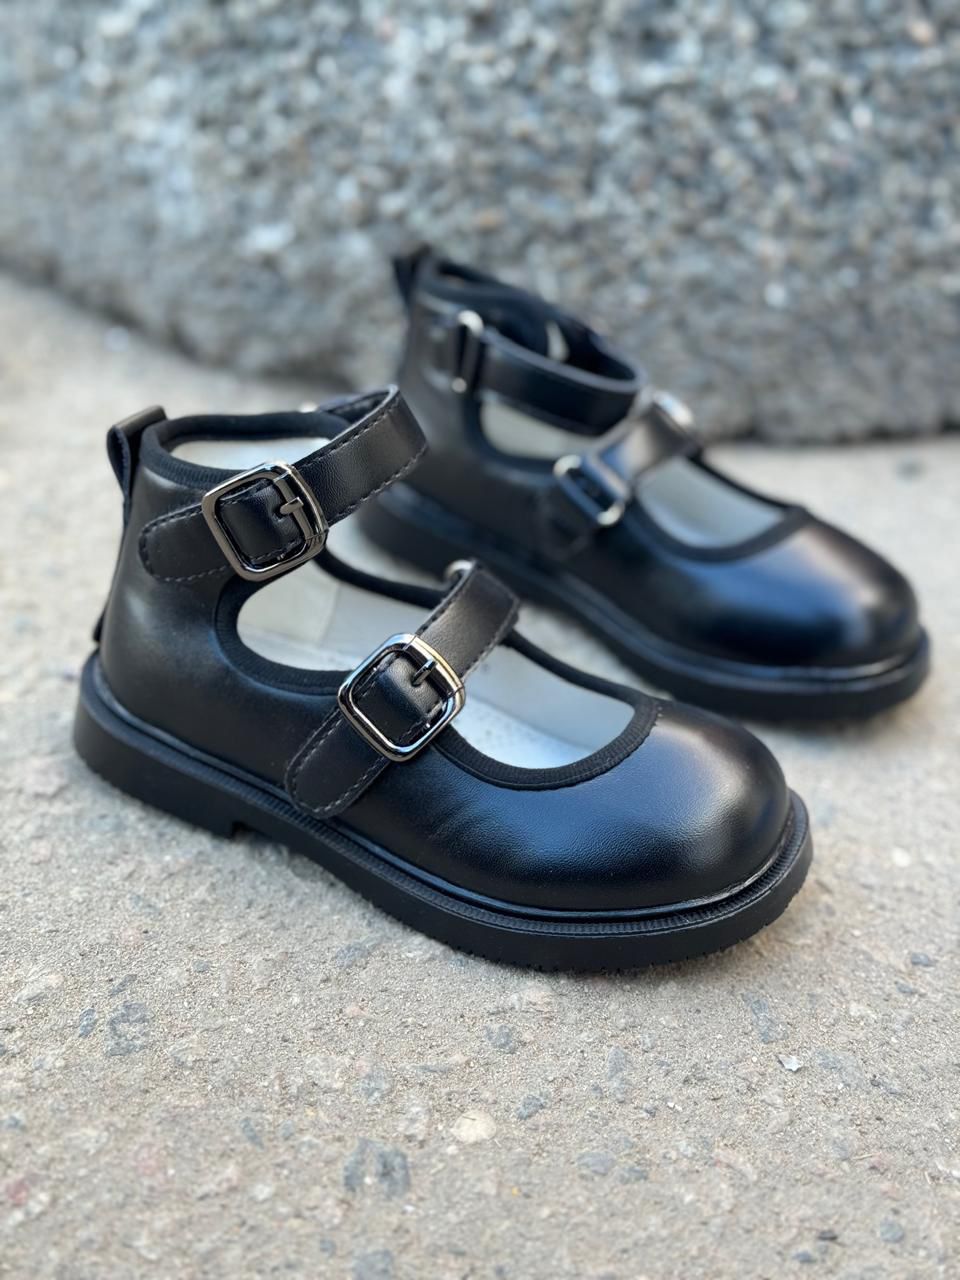 картинка Детские весенние туфли BESSKY SO-242-38 (8 пар в коробе, размер 26-31) от оптового интернет-магазина Shoesopt.by